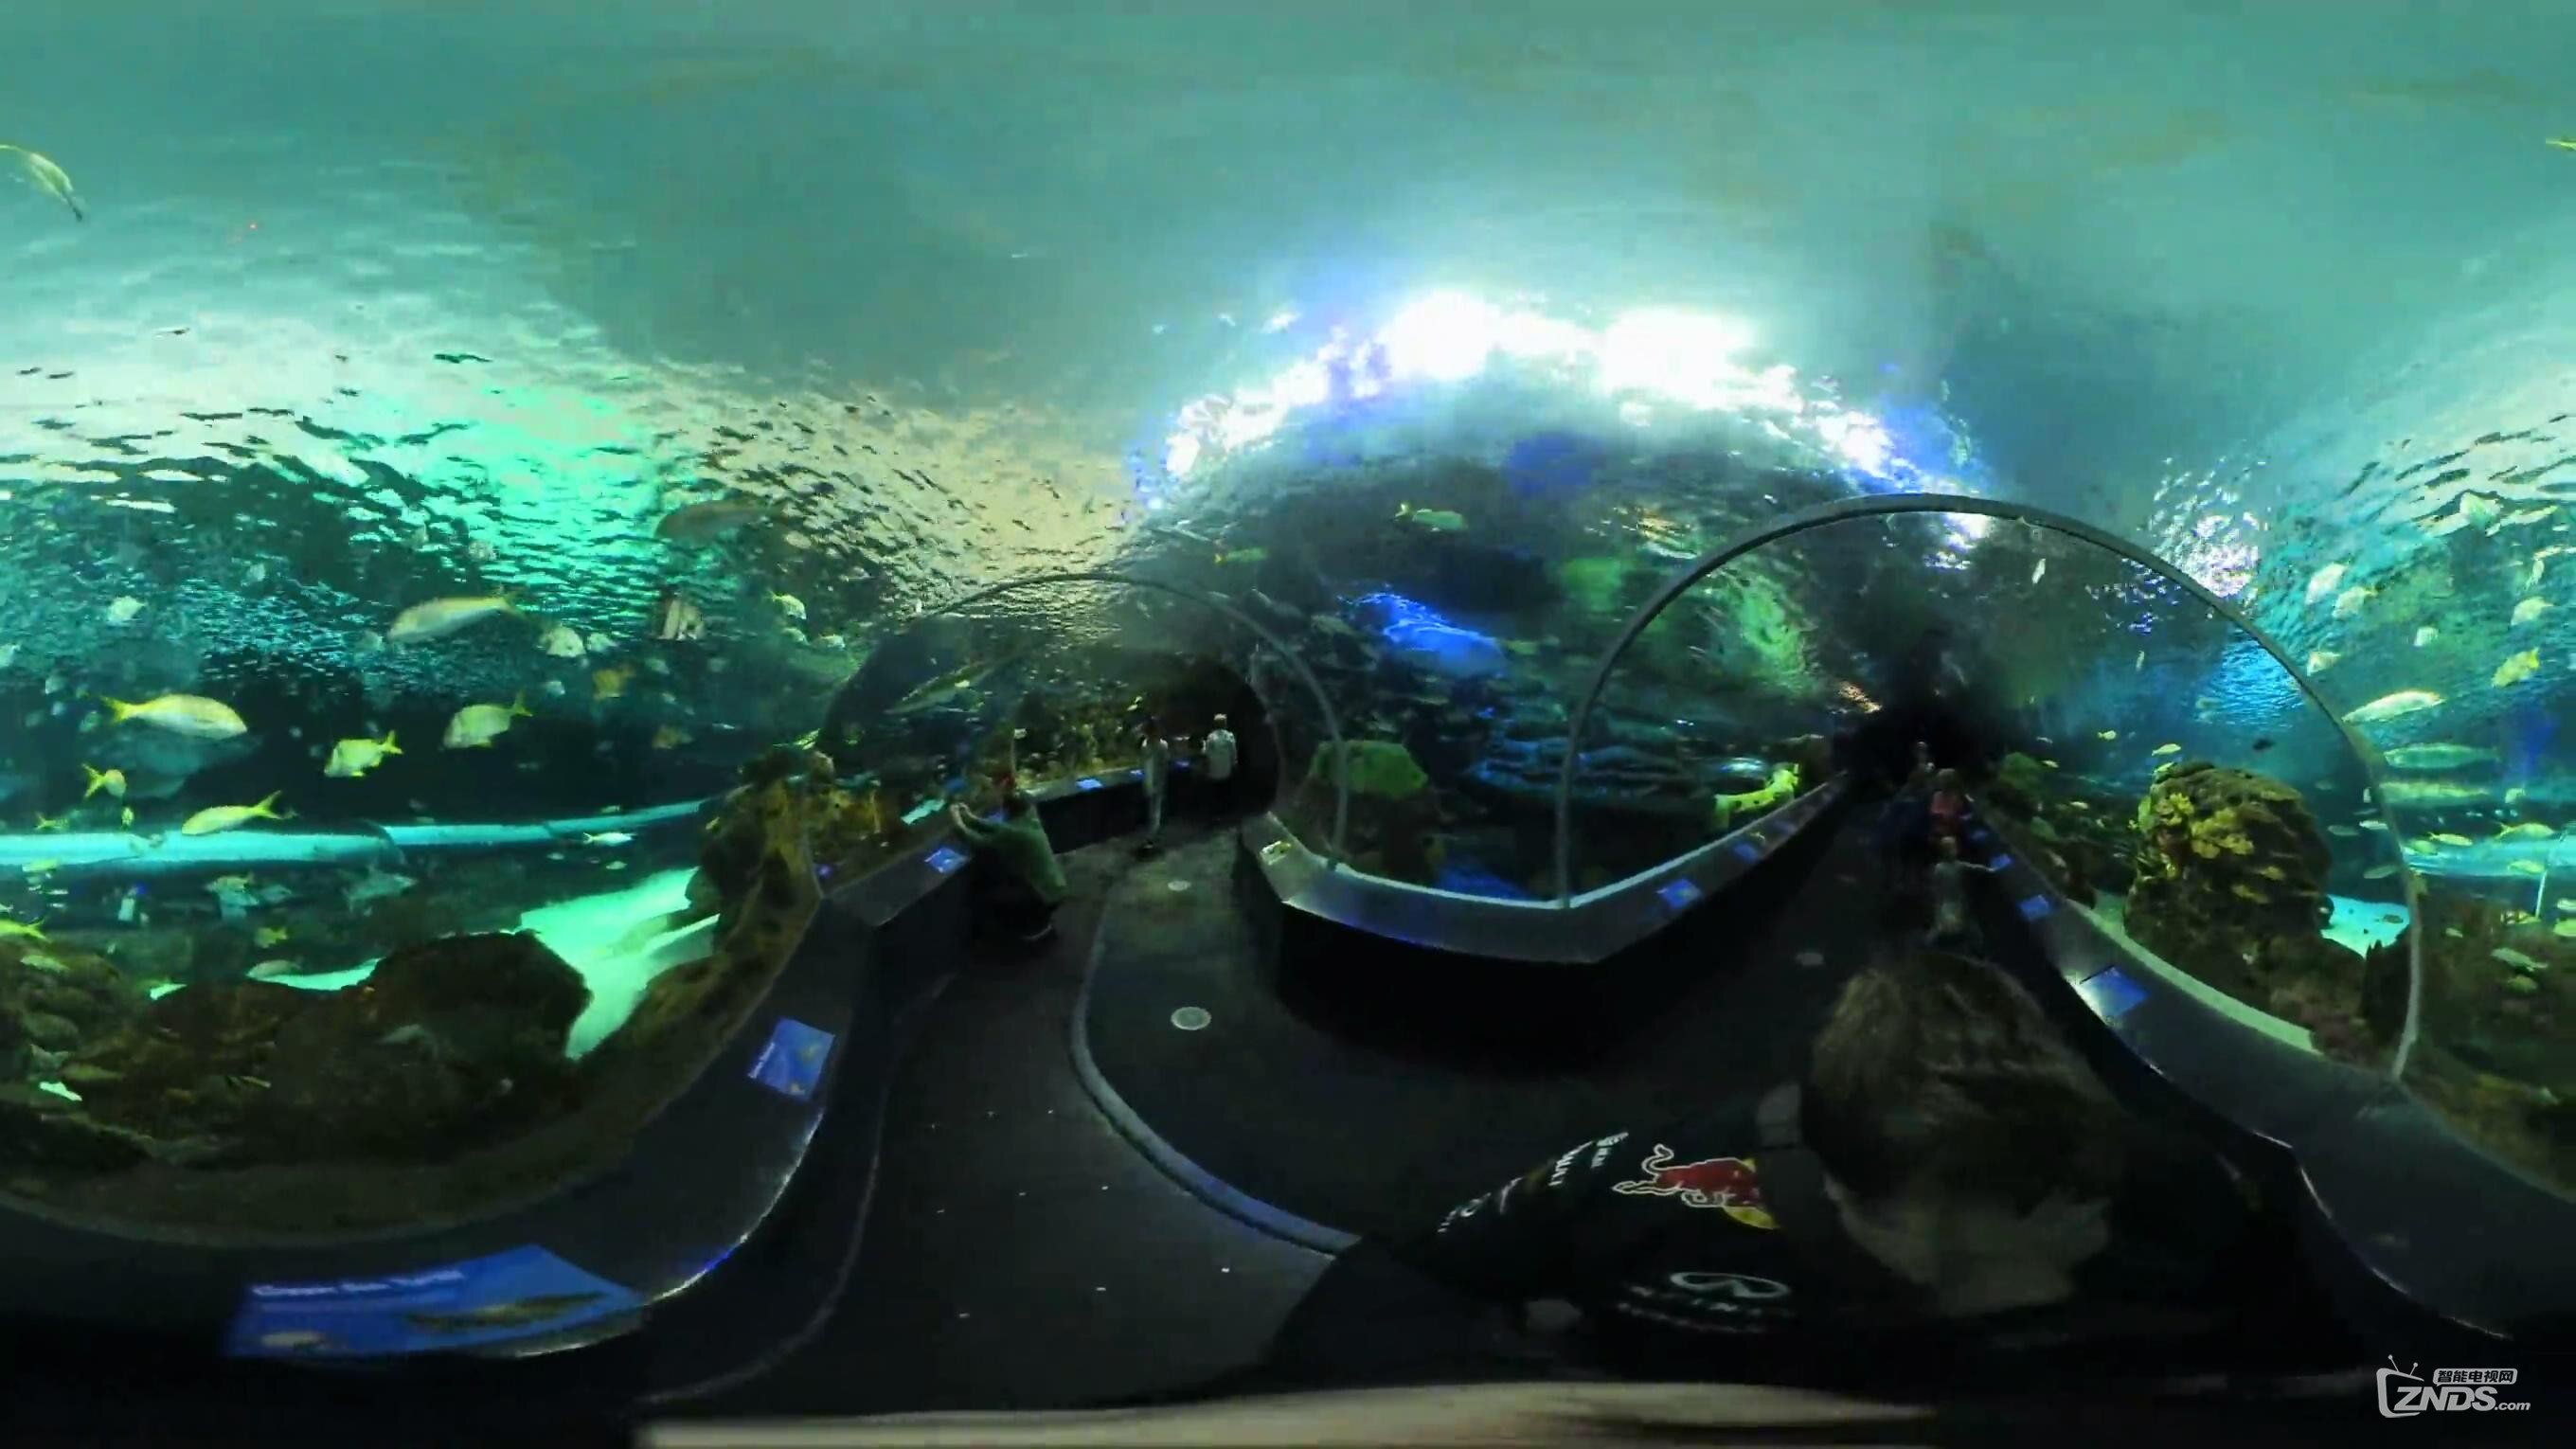 【VR带你游世界】瑞普利水族馆隧道@加拿大多伦多_20170116101612.JPG